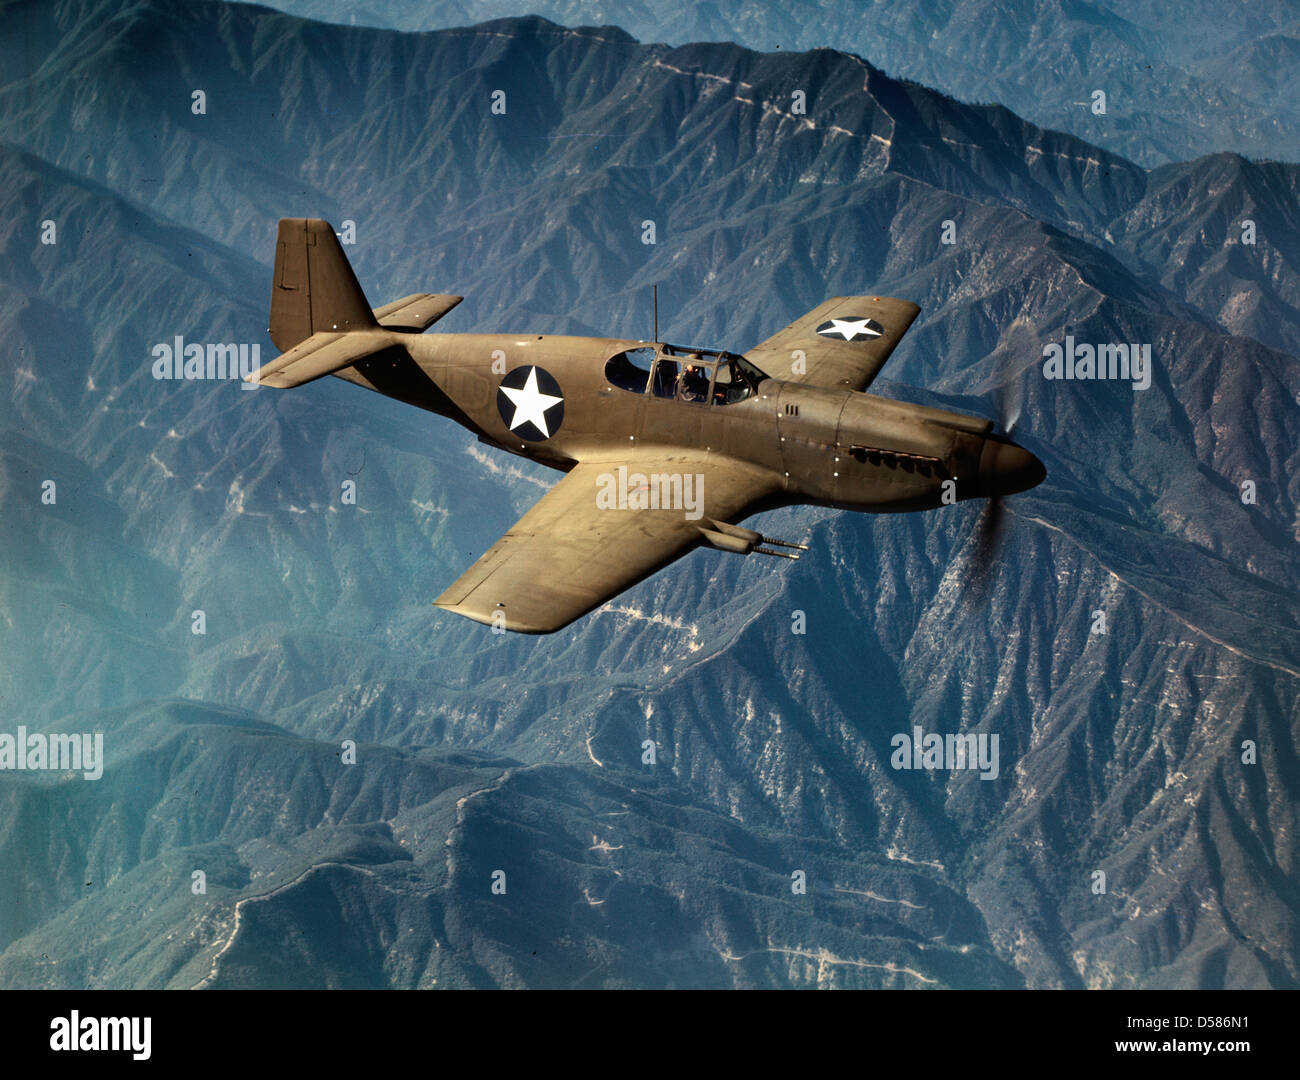 P-51 'Mustang' fighter en vol, Inglewood, Californie le 'Mustang', construit par North American Aviation, Incorporated, est le seul avion de chasse américain utilisé par la Royal Air Force de Grande-Bretagne, vers 1942 Banque D'Images